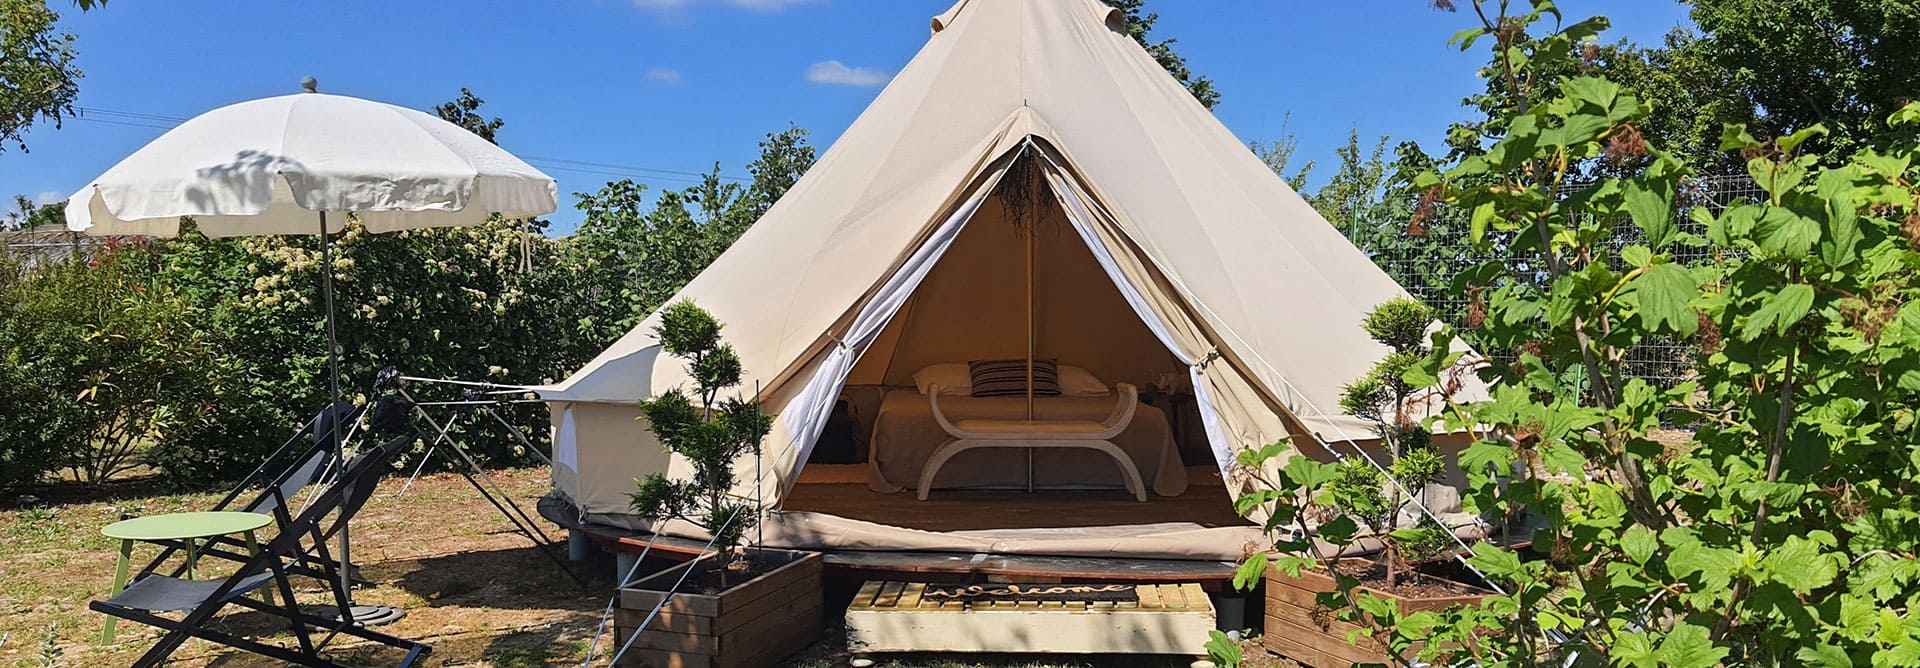 L'Escale Occitane camping dans l'Aude, location d'une tente Inuit pour 2 personnes